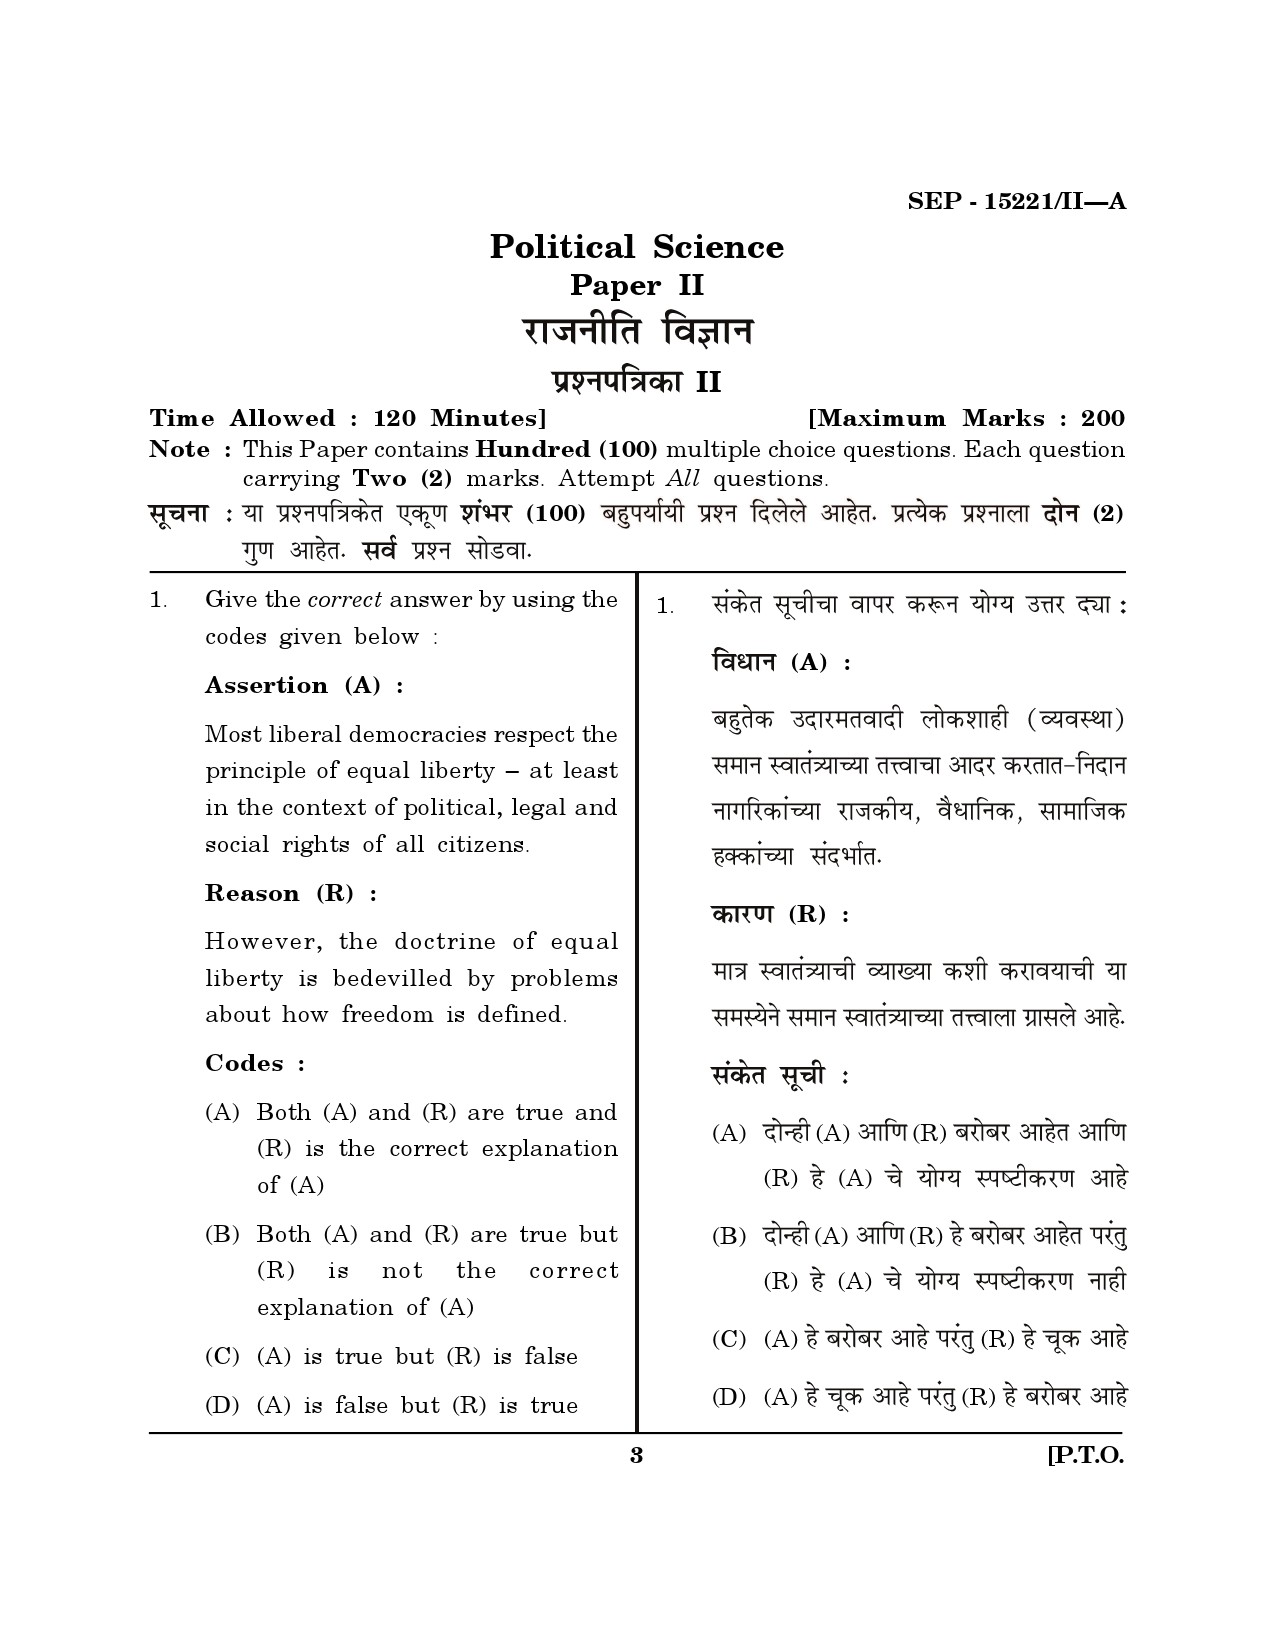 Maharashtra SET Political Science Exam Question Paper September 2021 2